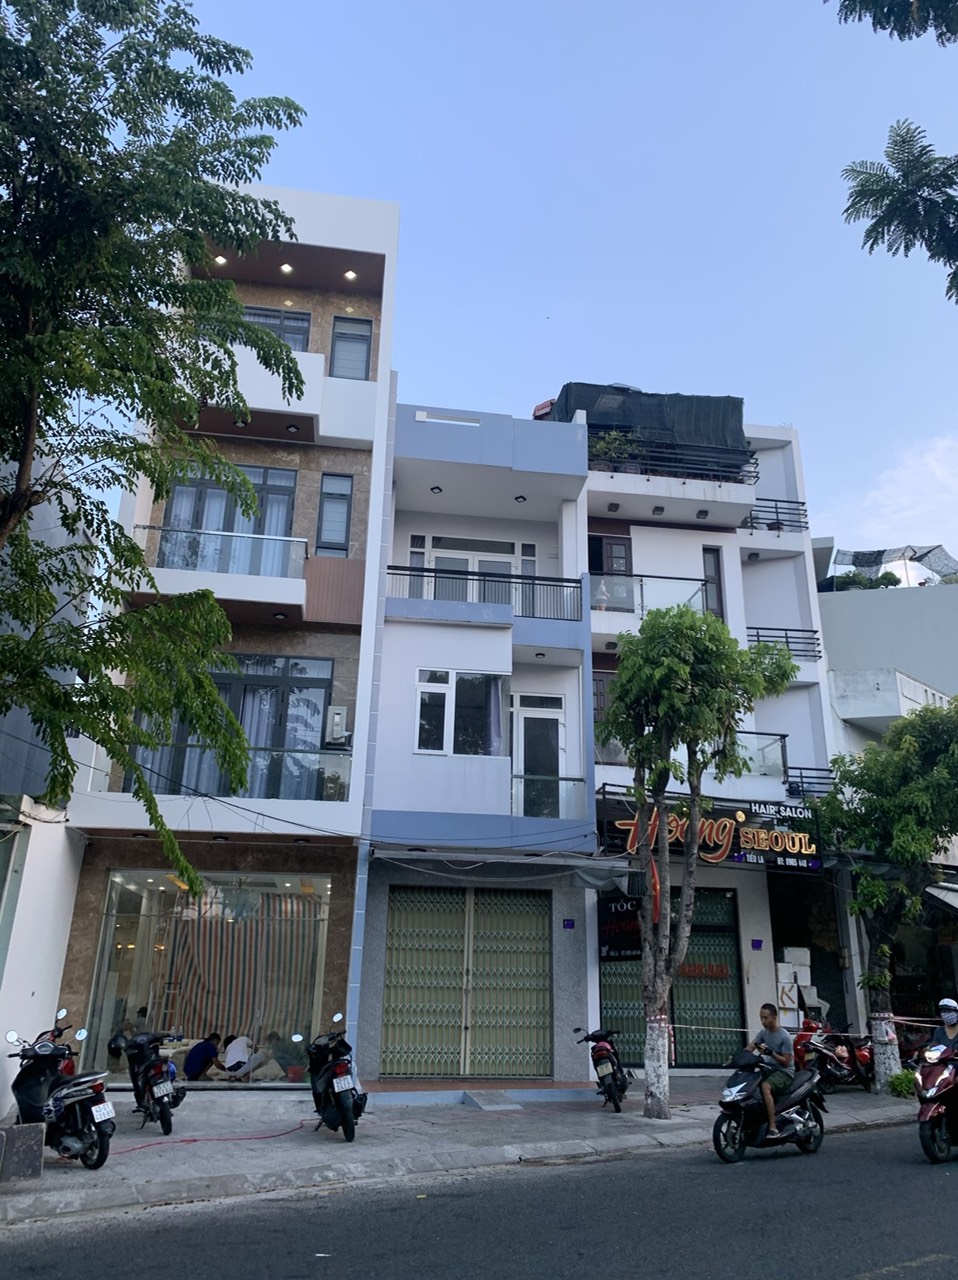 Bán nhà 3 tầng đường Tiểu La gần đường 2 tháng 9 quận Hải Châu gần góc ngã tư kinh doanh nhộn nhịp.